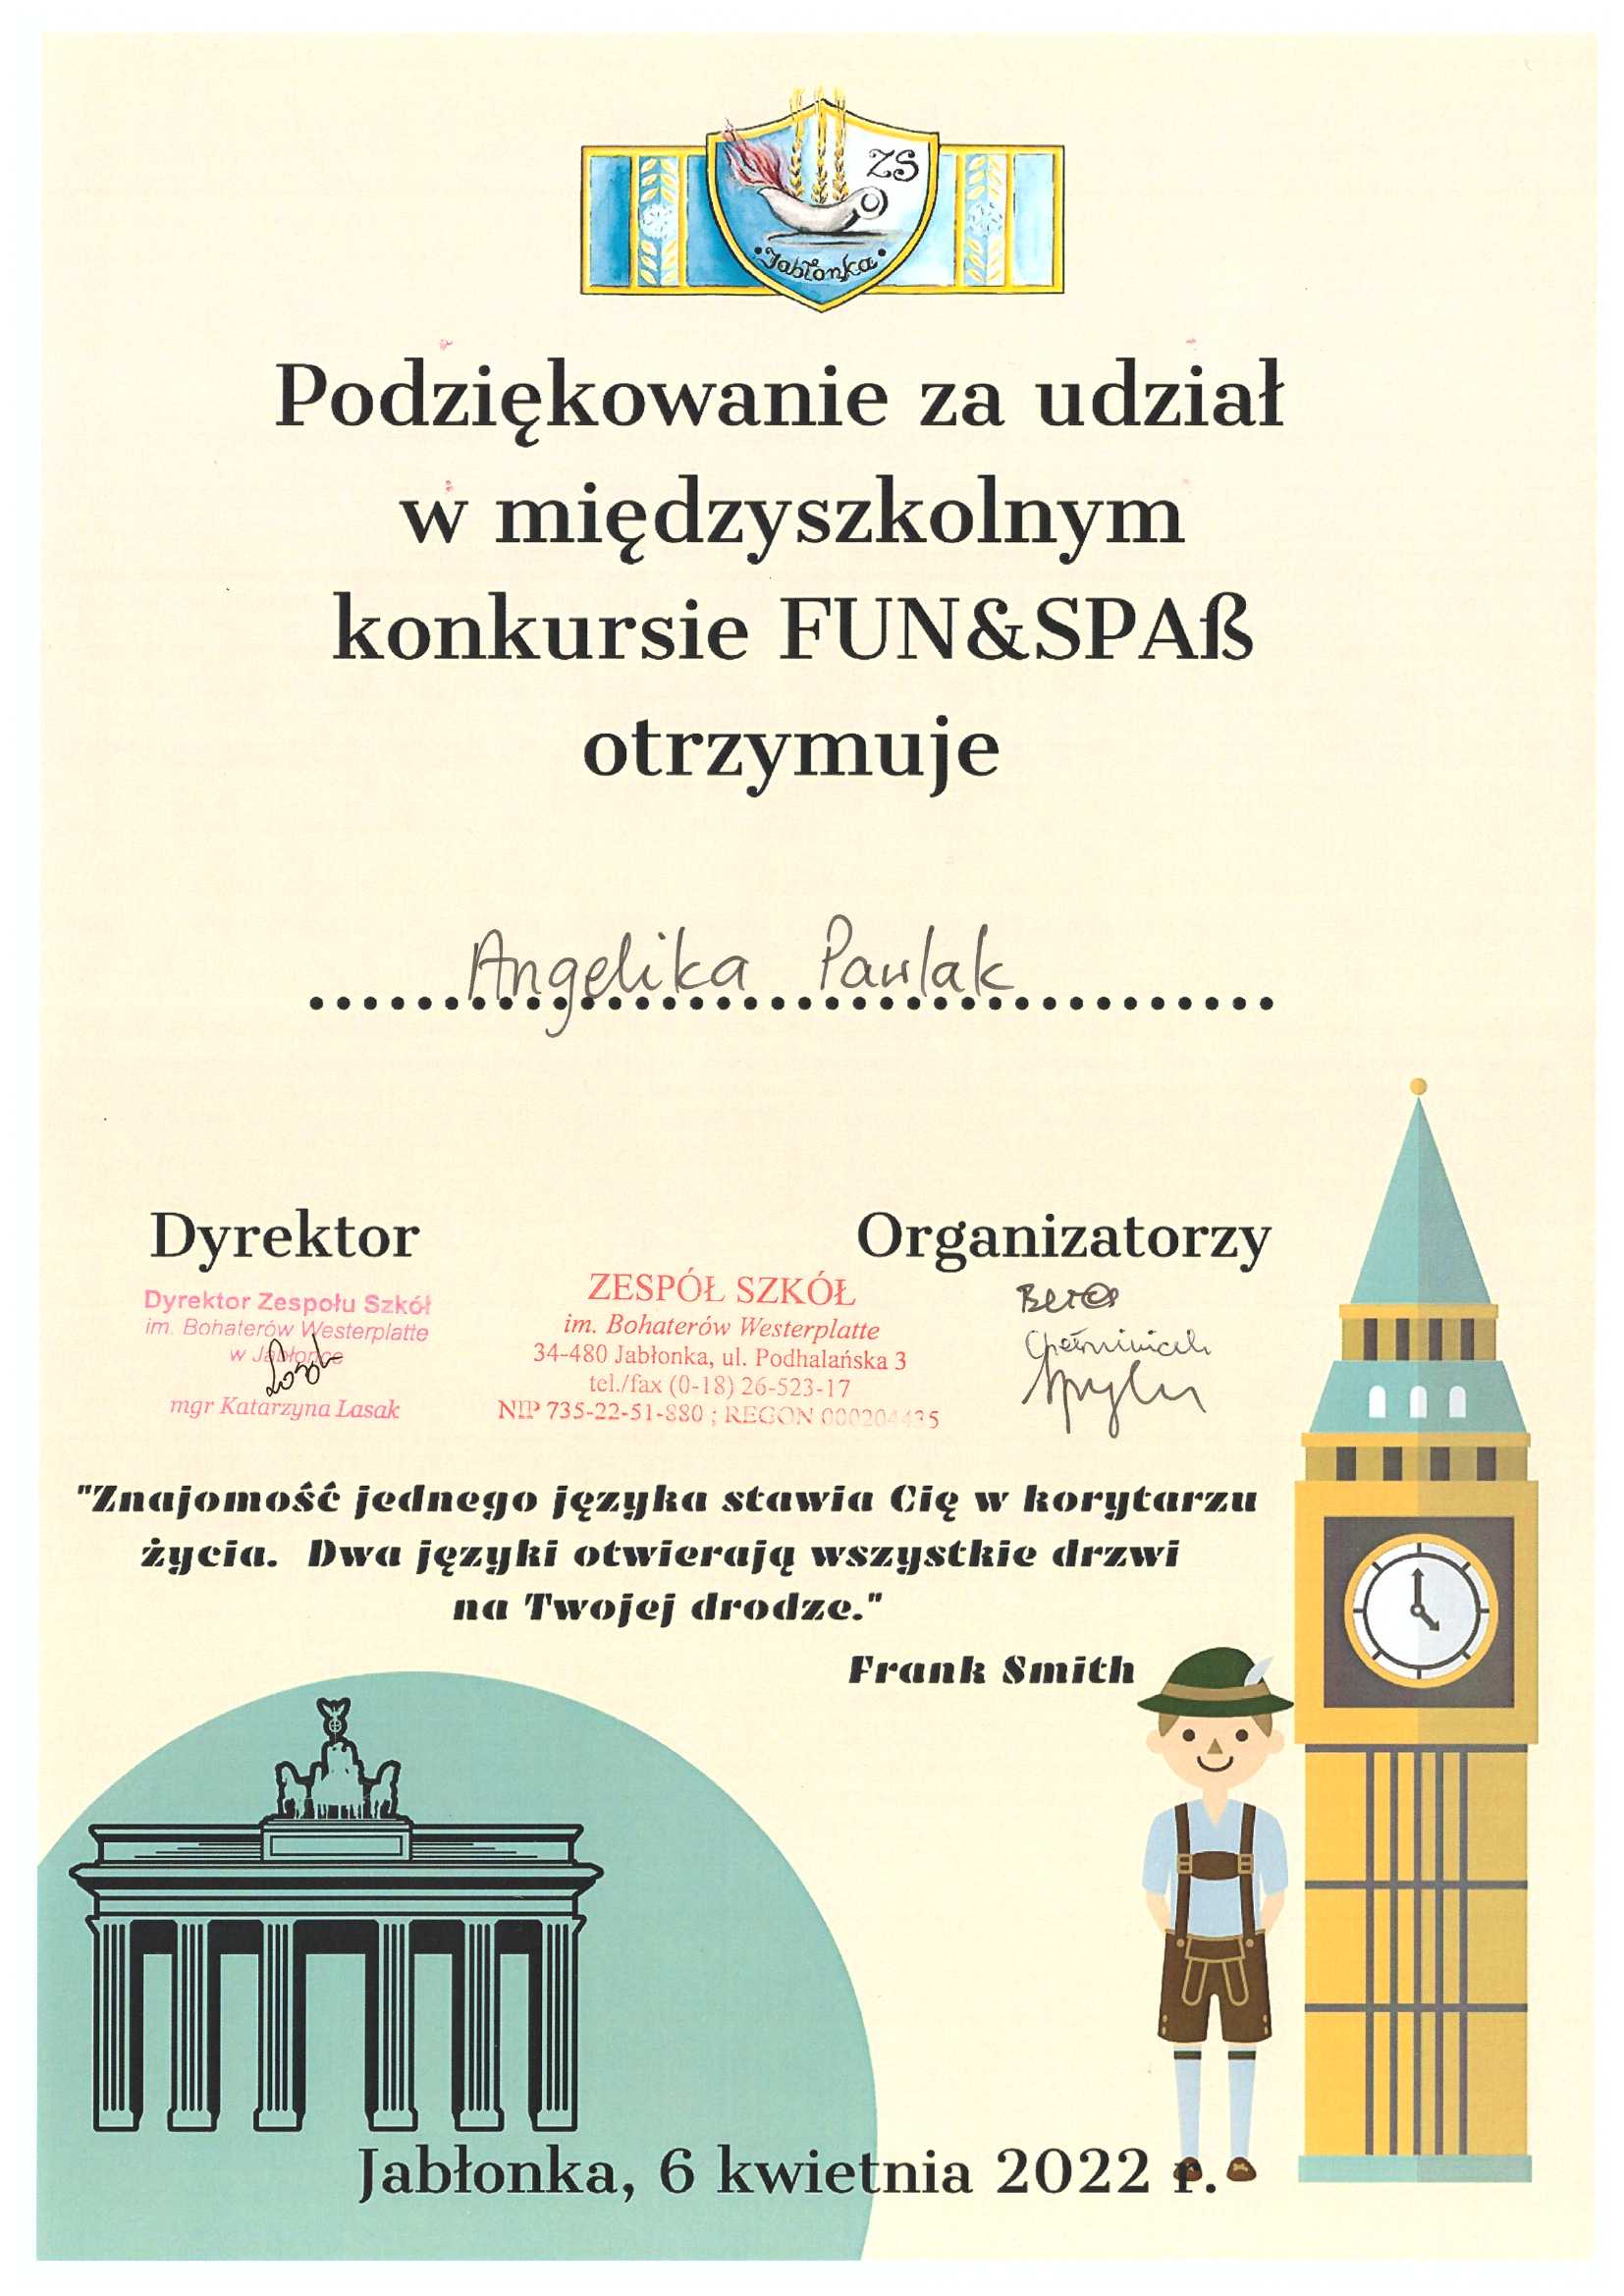 Podziękowanie za udział w międzyszkolnym konkursie FUN&SPAB otrzymuje Angelika Pawlak